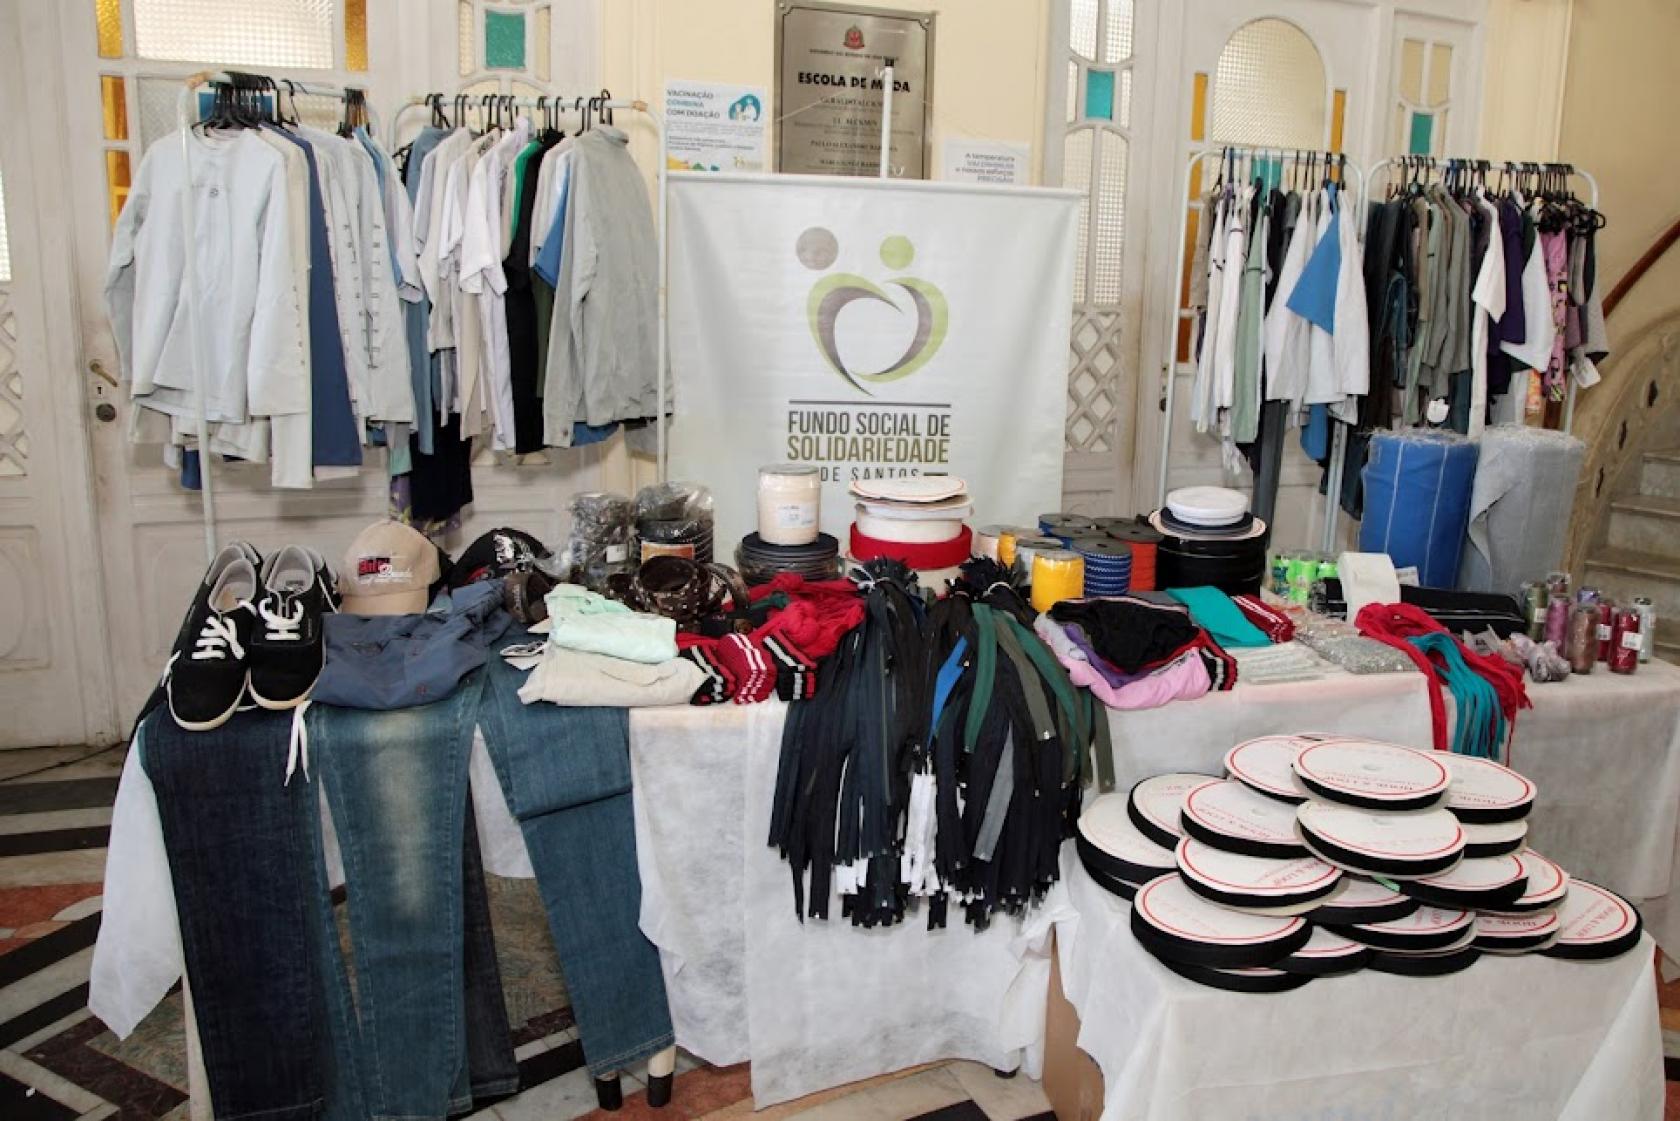 roupas em araras e mesas, tênis e aviamentos. Um banner do fundo social no fundo. #paratodosverem